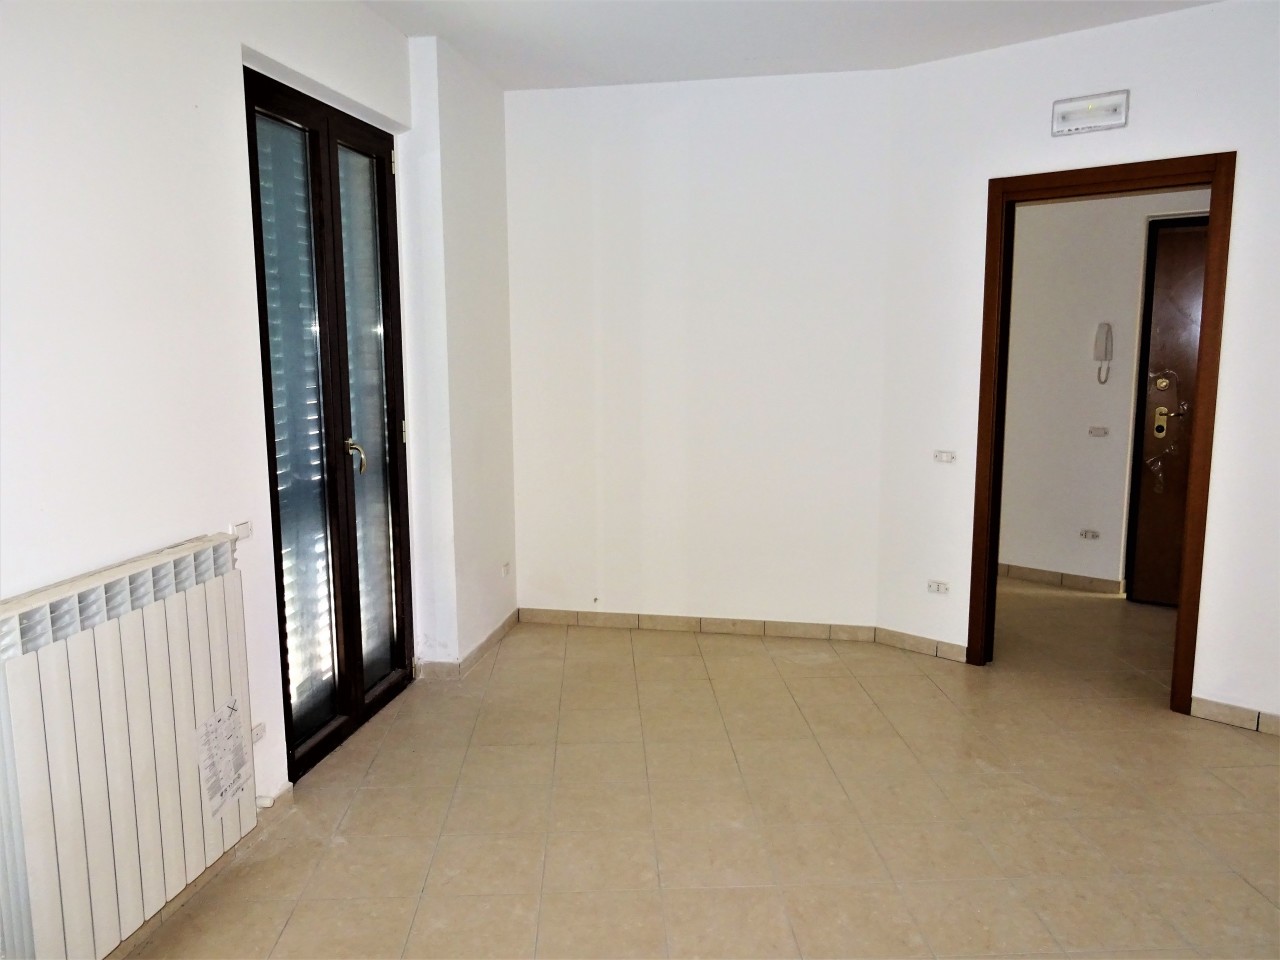 Appartamento in vendita a Ostra Vetere, 3 locali, prezzo € 220.000 | PortaleAgenzieImmobiliari.it